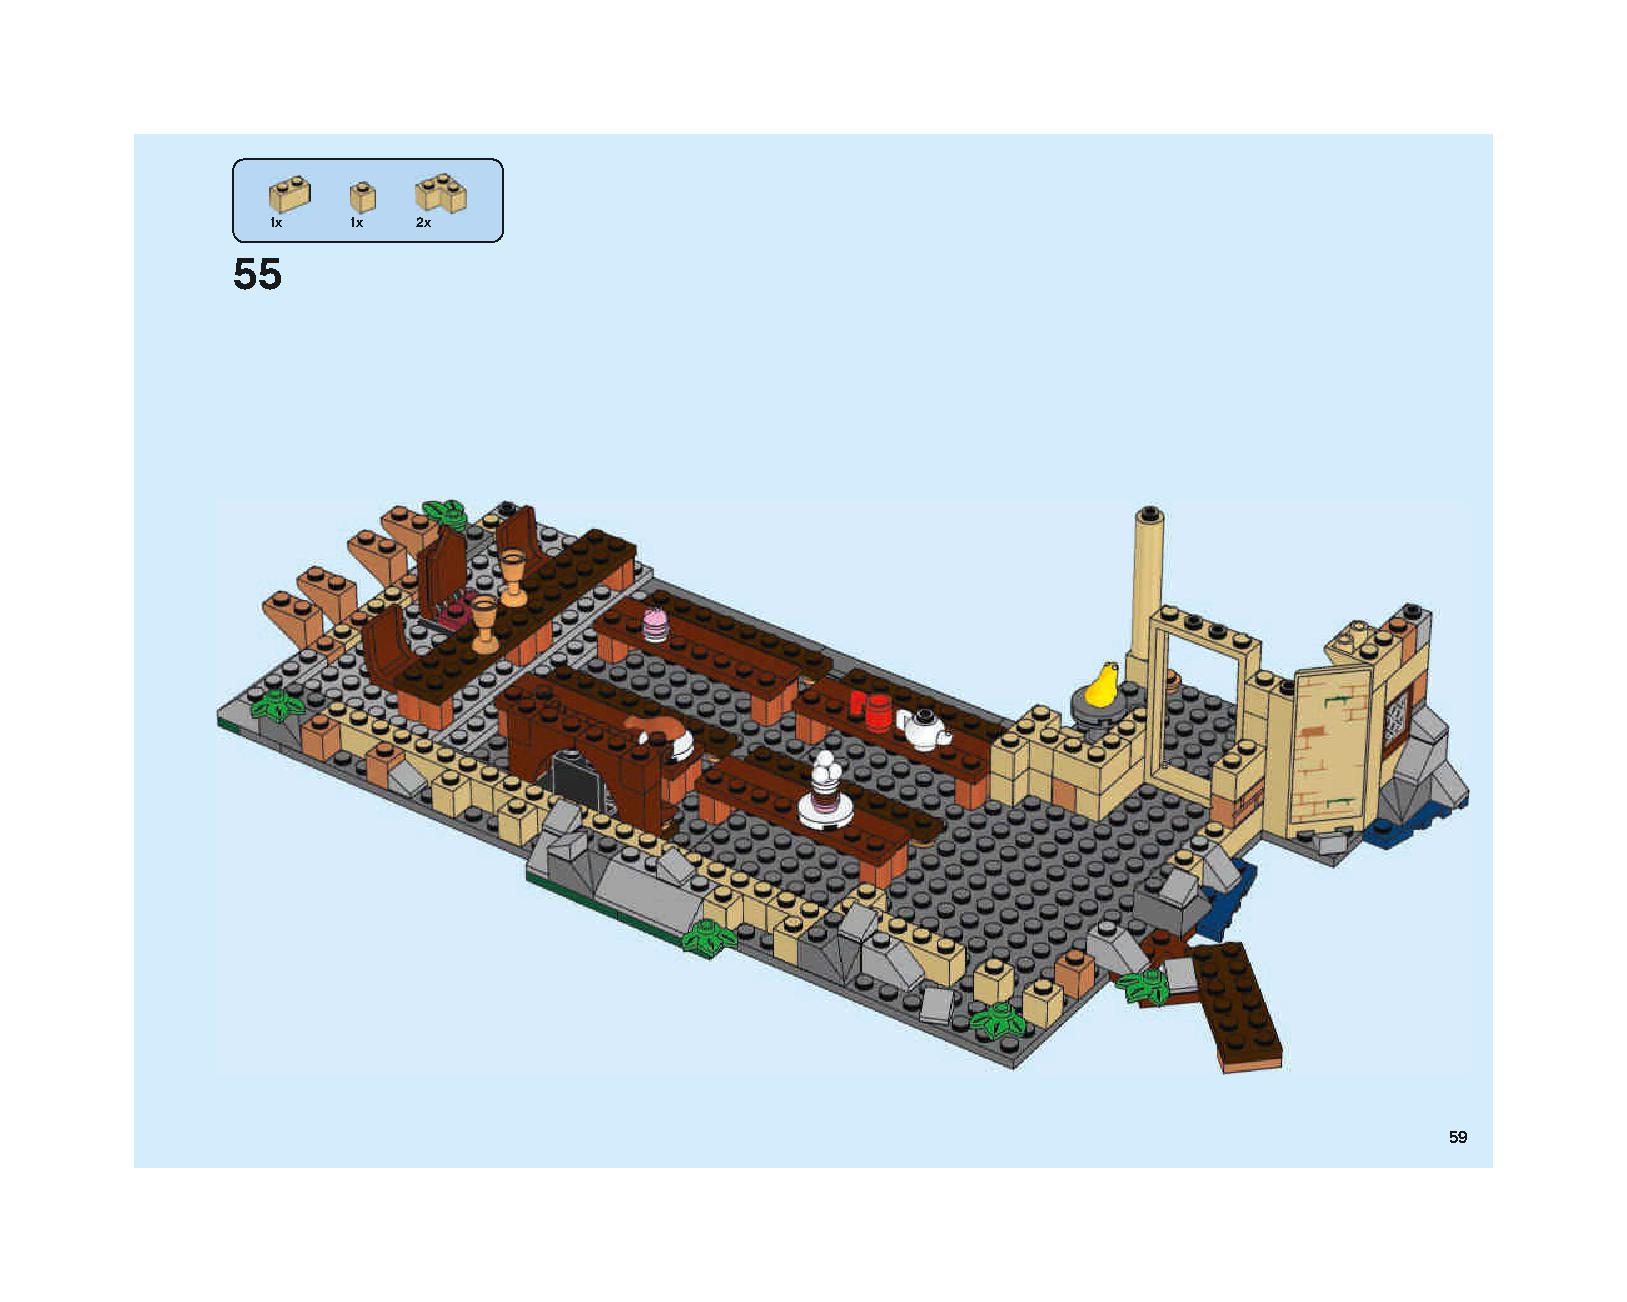 ホグワーツの大広間 75954 レゴの商品情報 レゴの説明書・組立方法 59 page